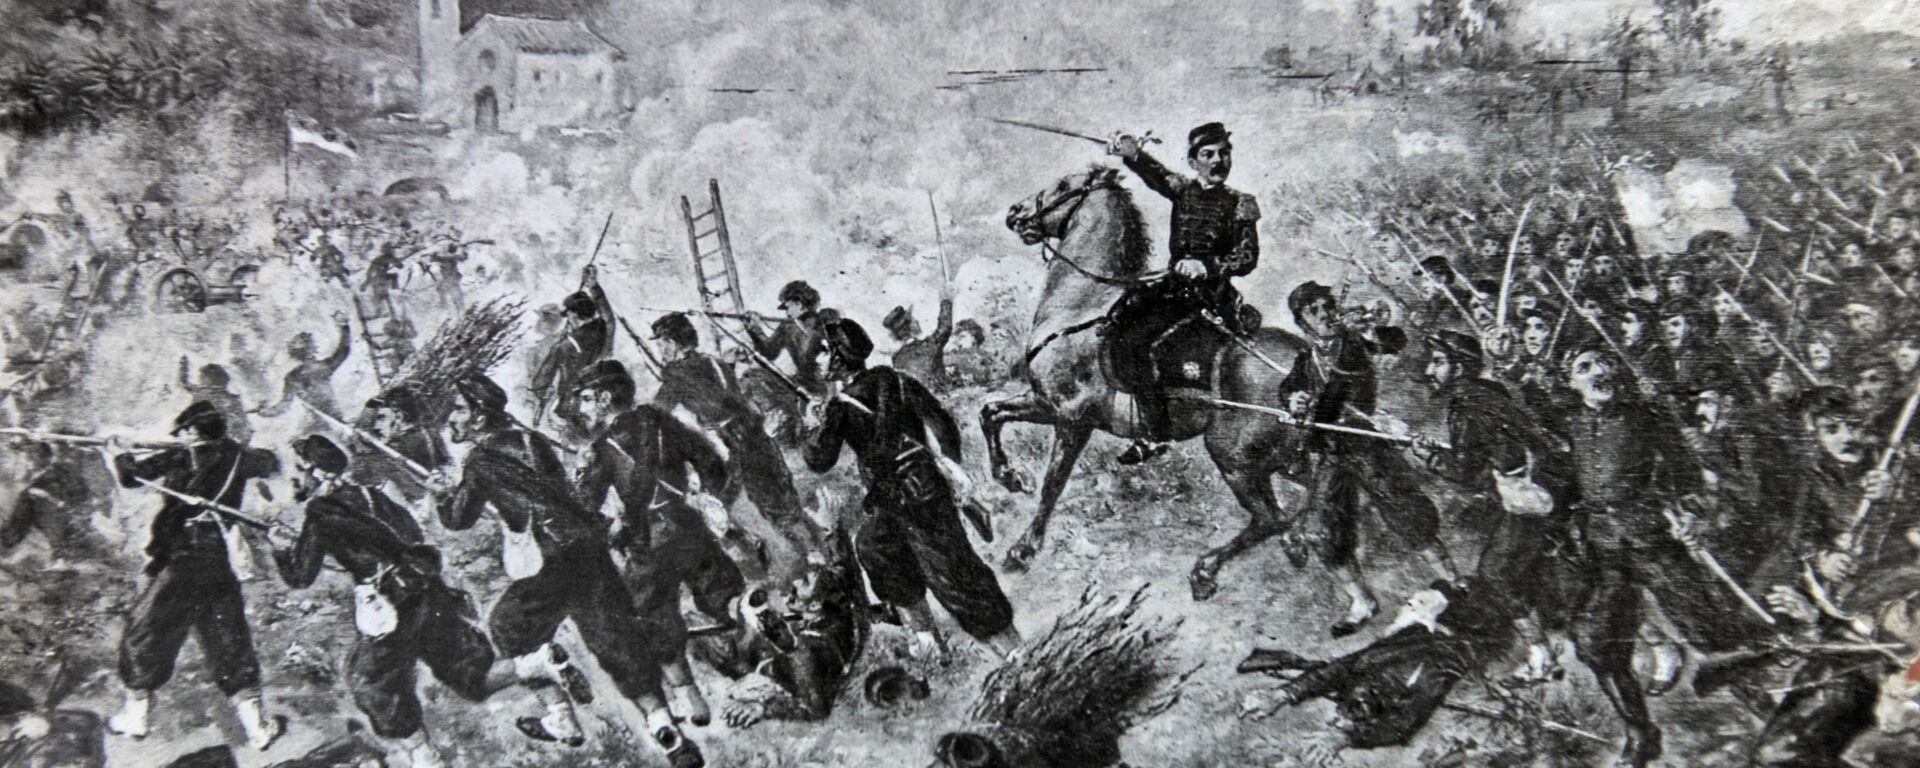 Una reproducción de la Batalla de Curupati durante la Guerra de la Triple Alianza - Sputnik Mundo, 1920, 13.06.2020